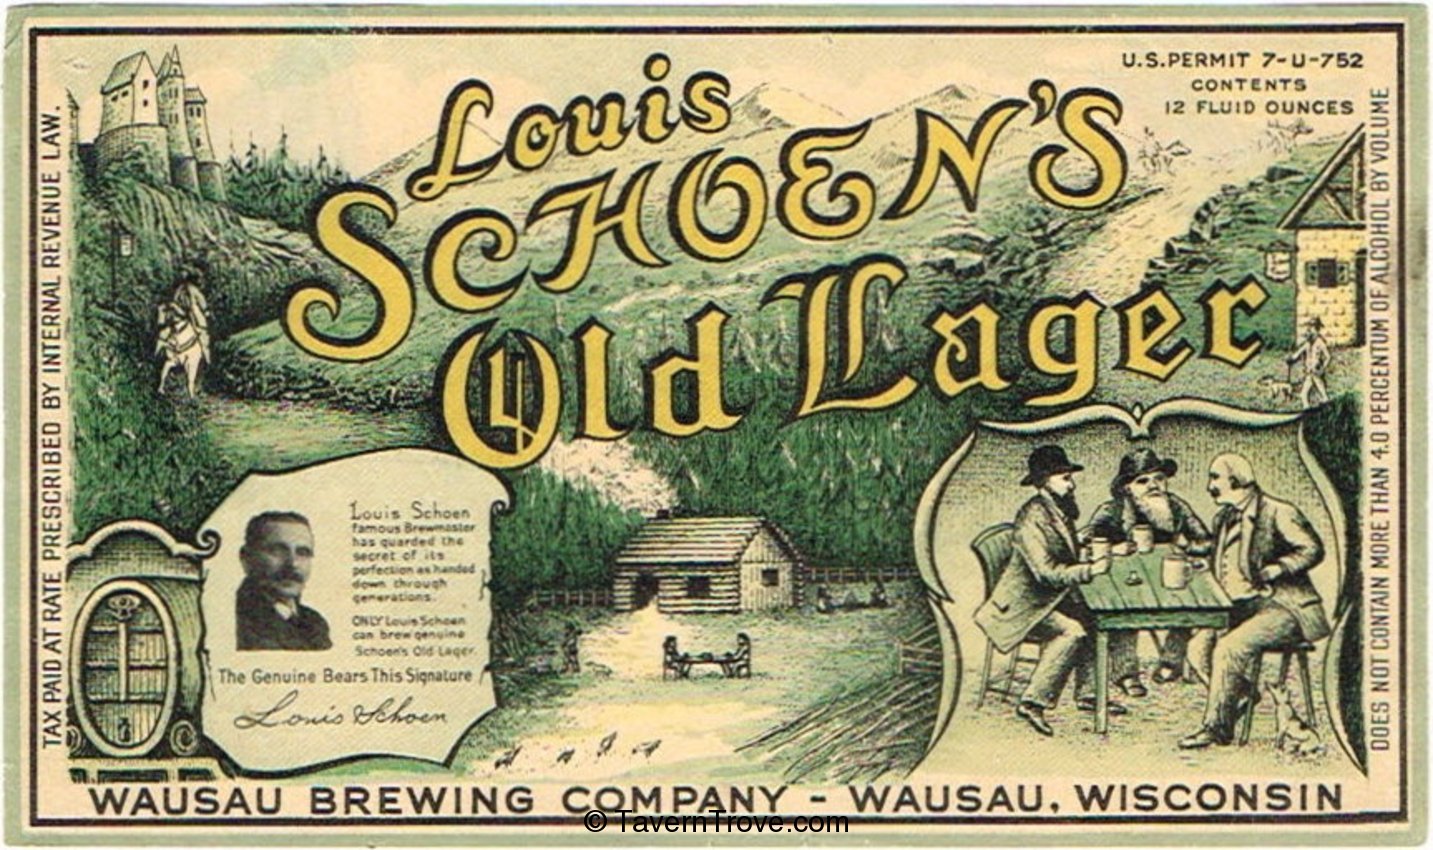 Louis Schoen's Old Lager Beer